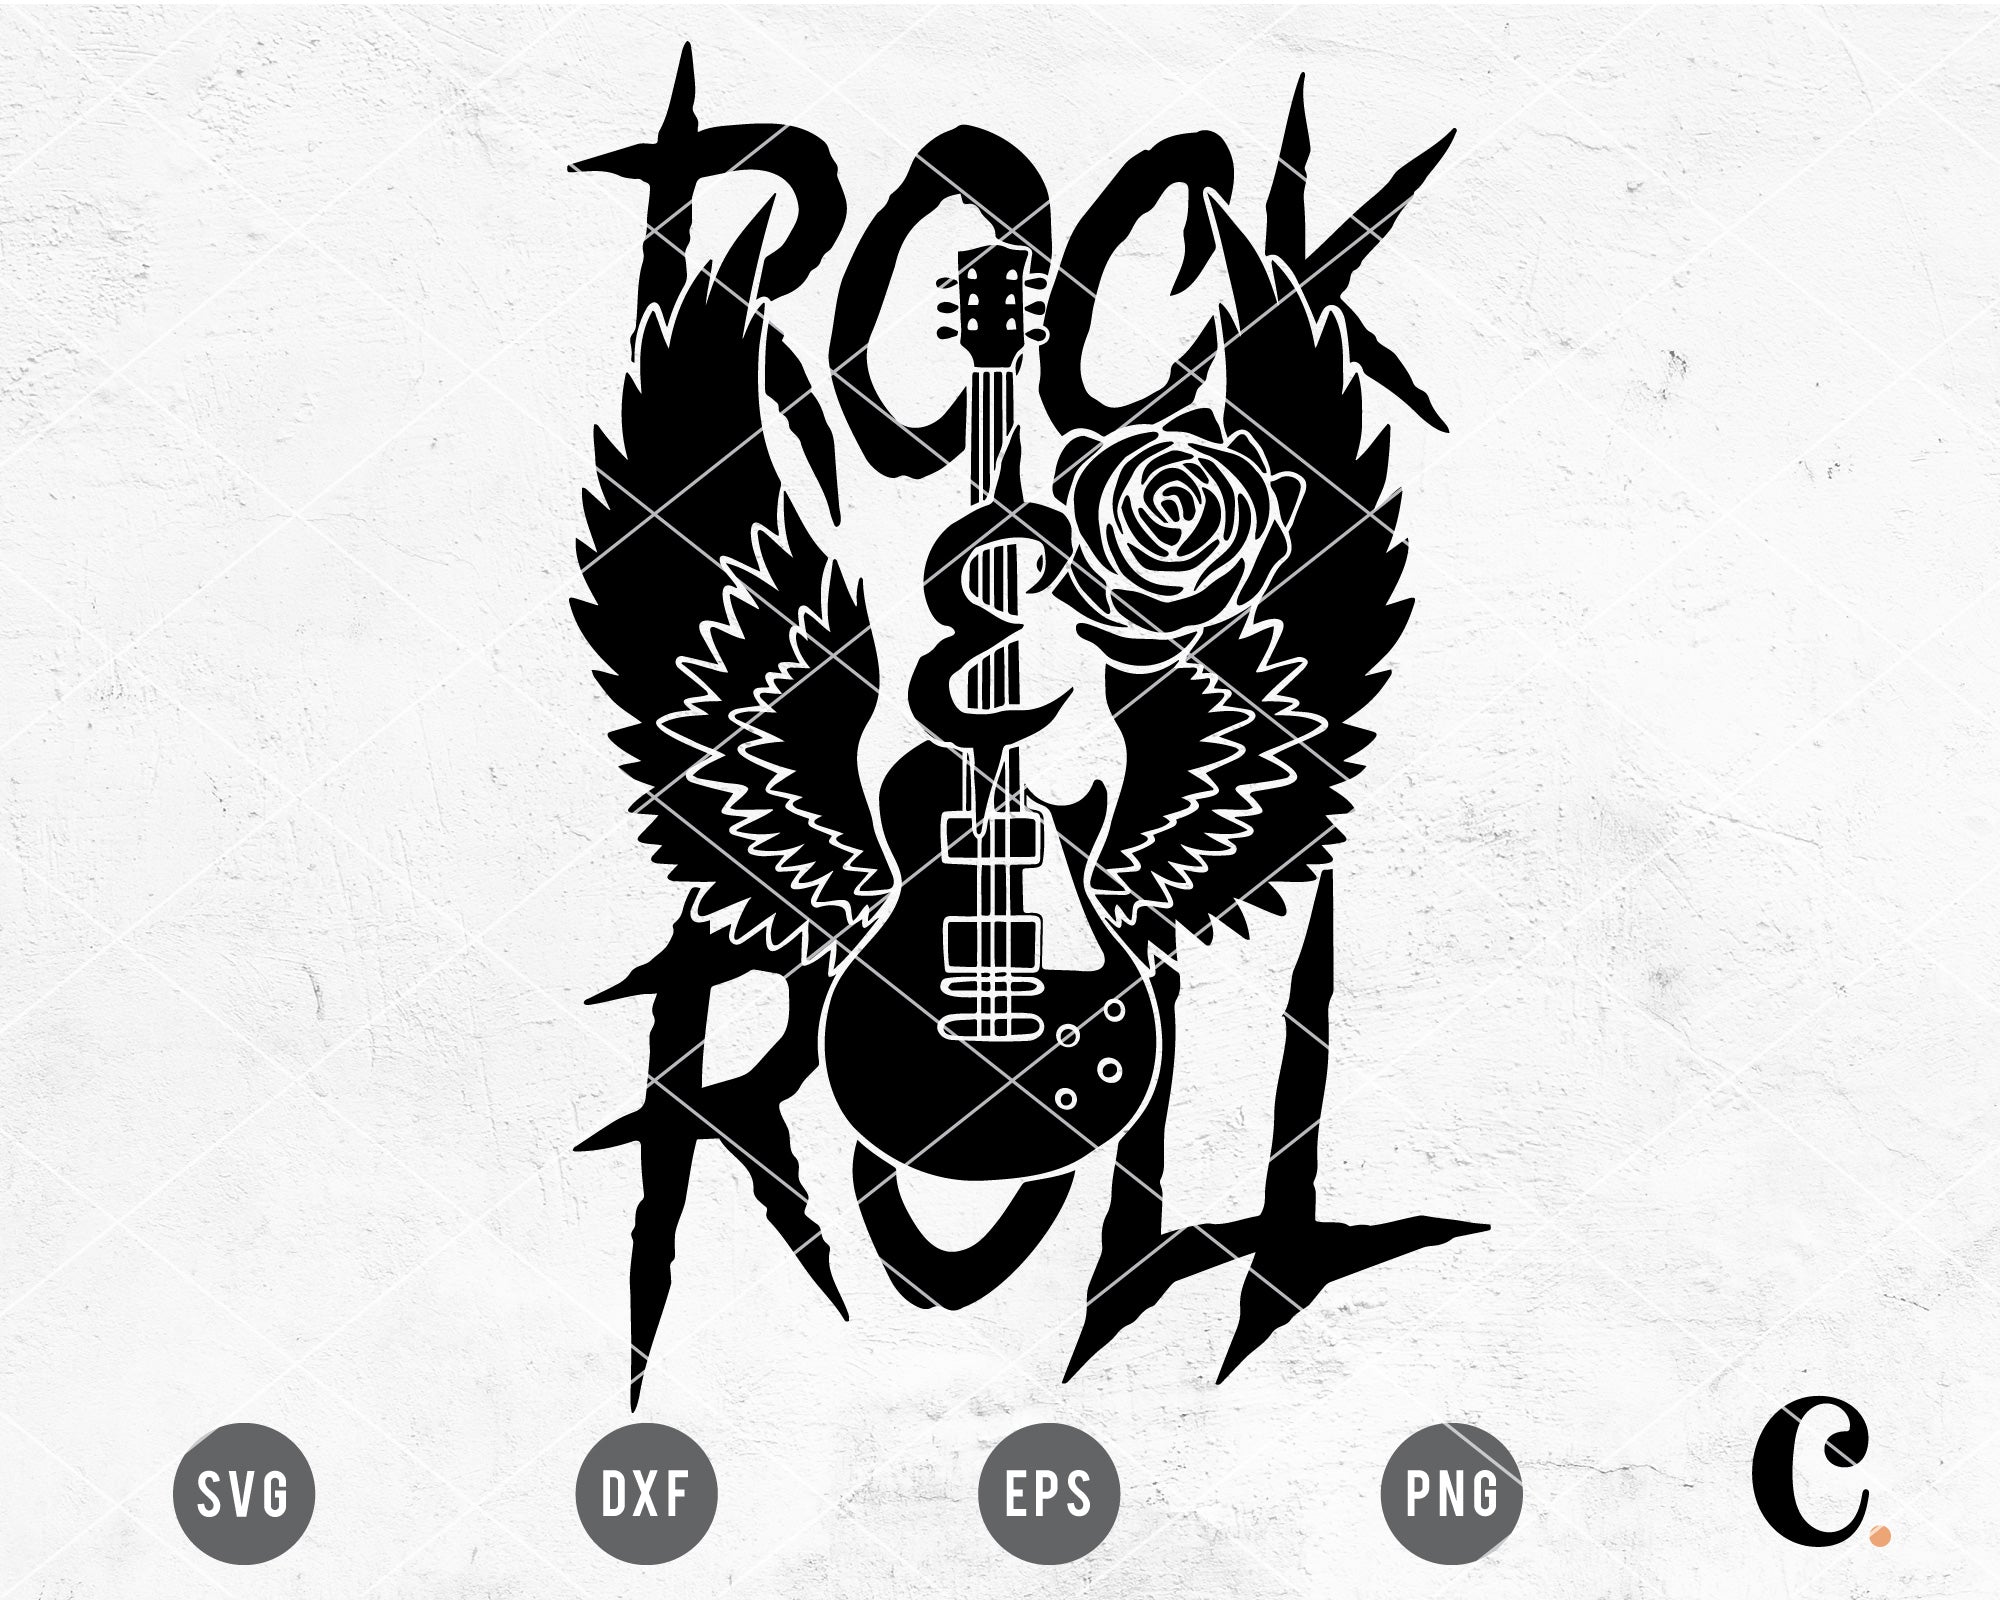 Rock N Roll SVG Bundle Rock Music Svg Png Dxf Eps Pdf 